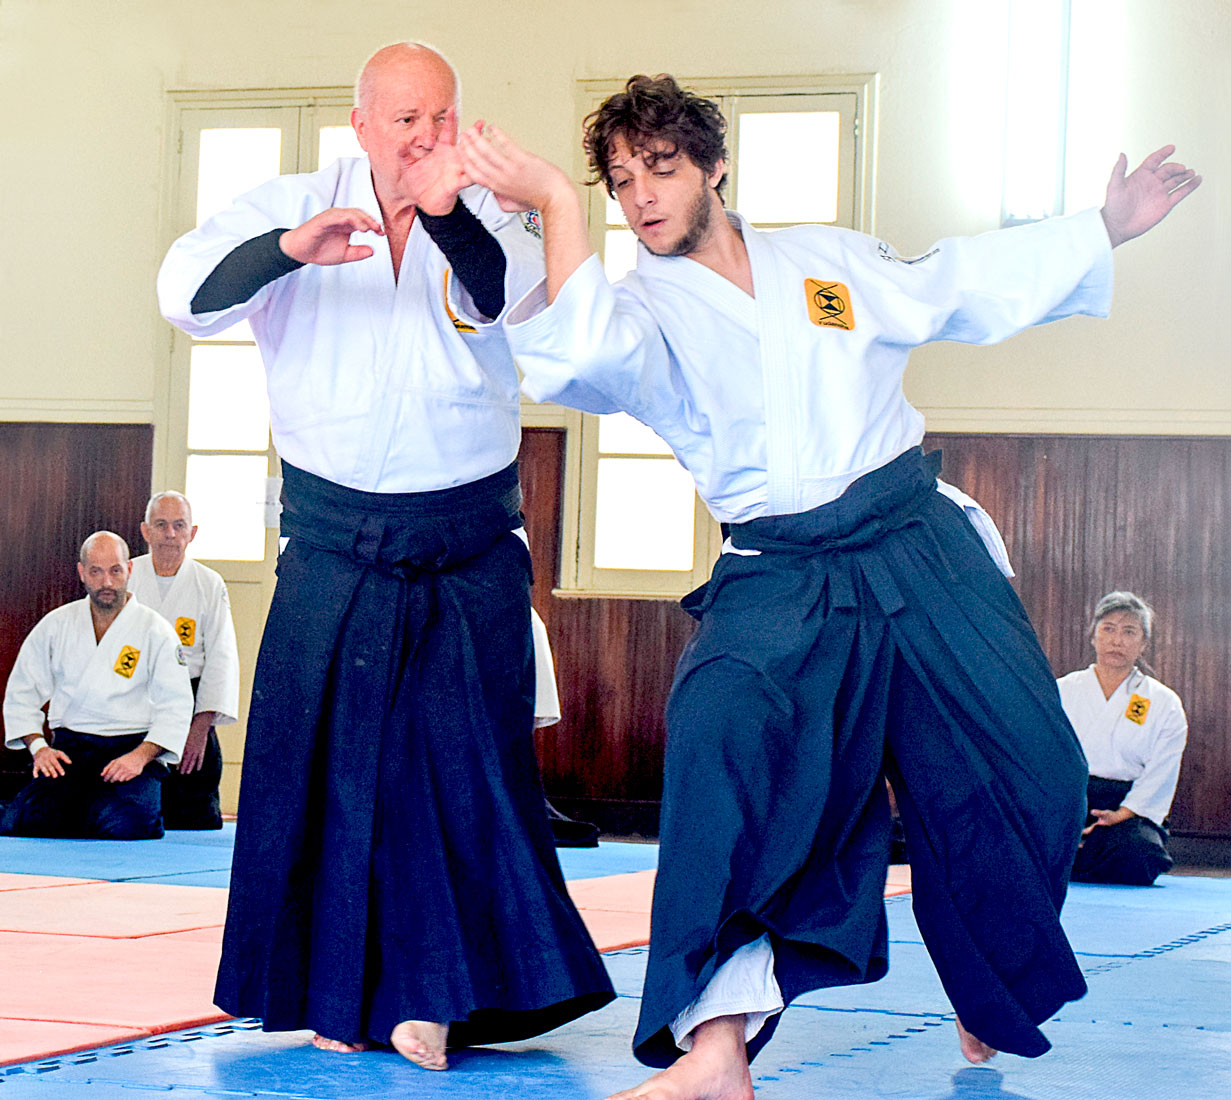 Wagner Bull mostra que a evolução do treinamento de aikidô abrange corpo, mente e espírito